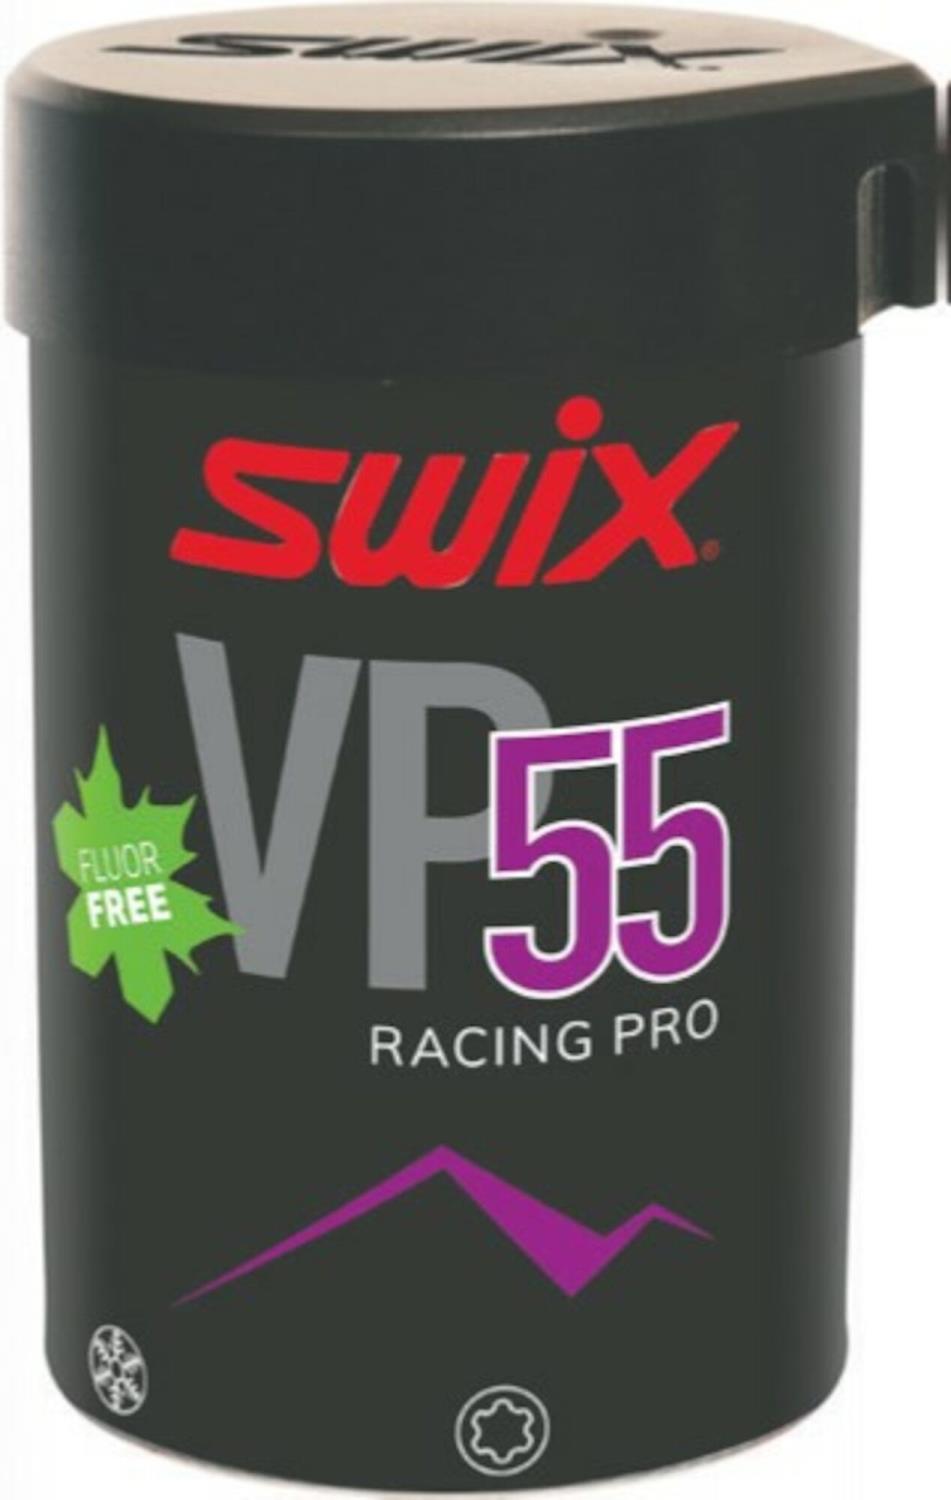 VP55 Pro violet